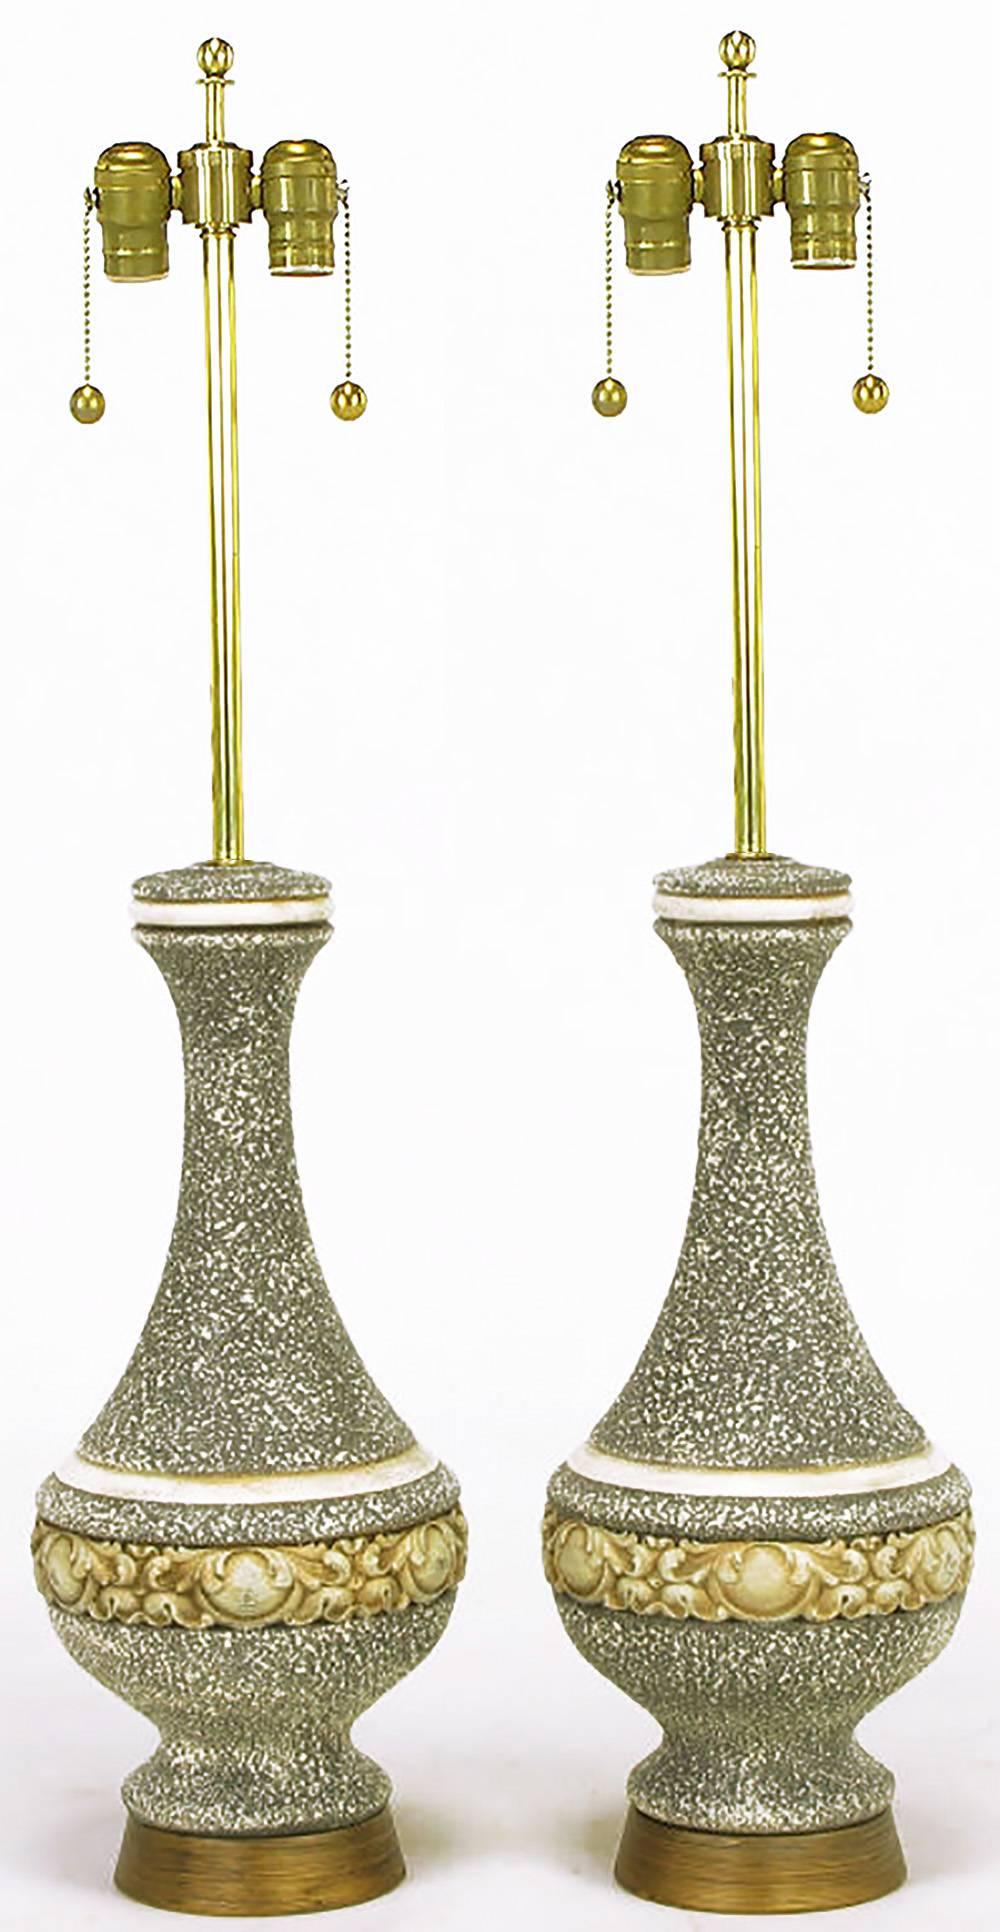 Zwei urnenförmige Tischlampen aus schwerem Gips im Rokoko-Stil mit fühlbarer grauer Glasur und vergoldeter Oberfläche. Sockel aus antikisiertem Messing mit Messingstielen, -harfen und -fassungen.